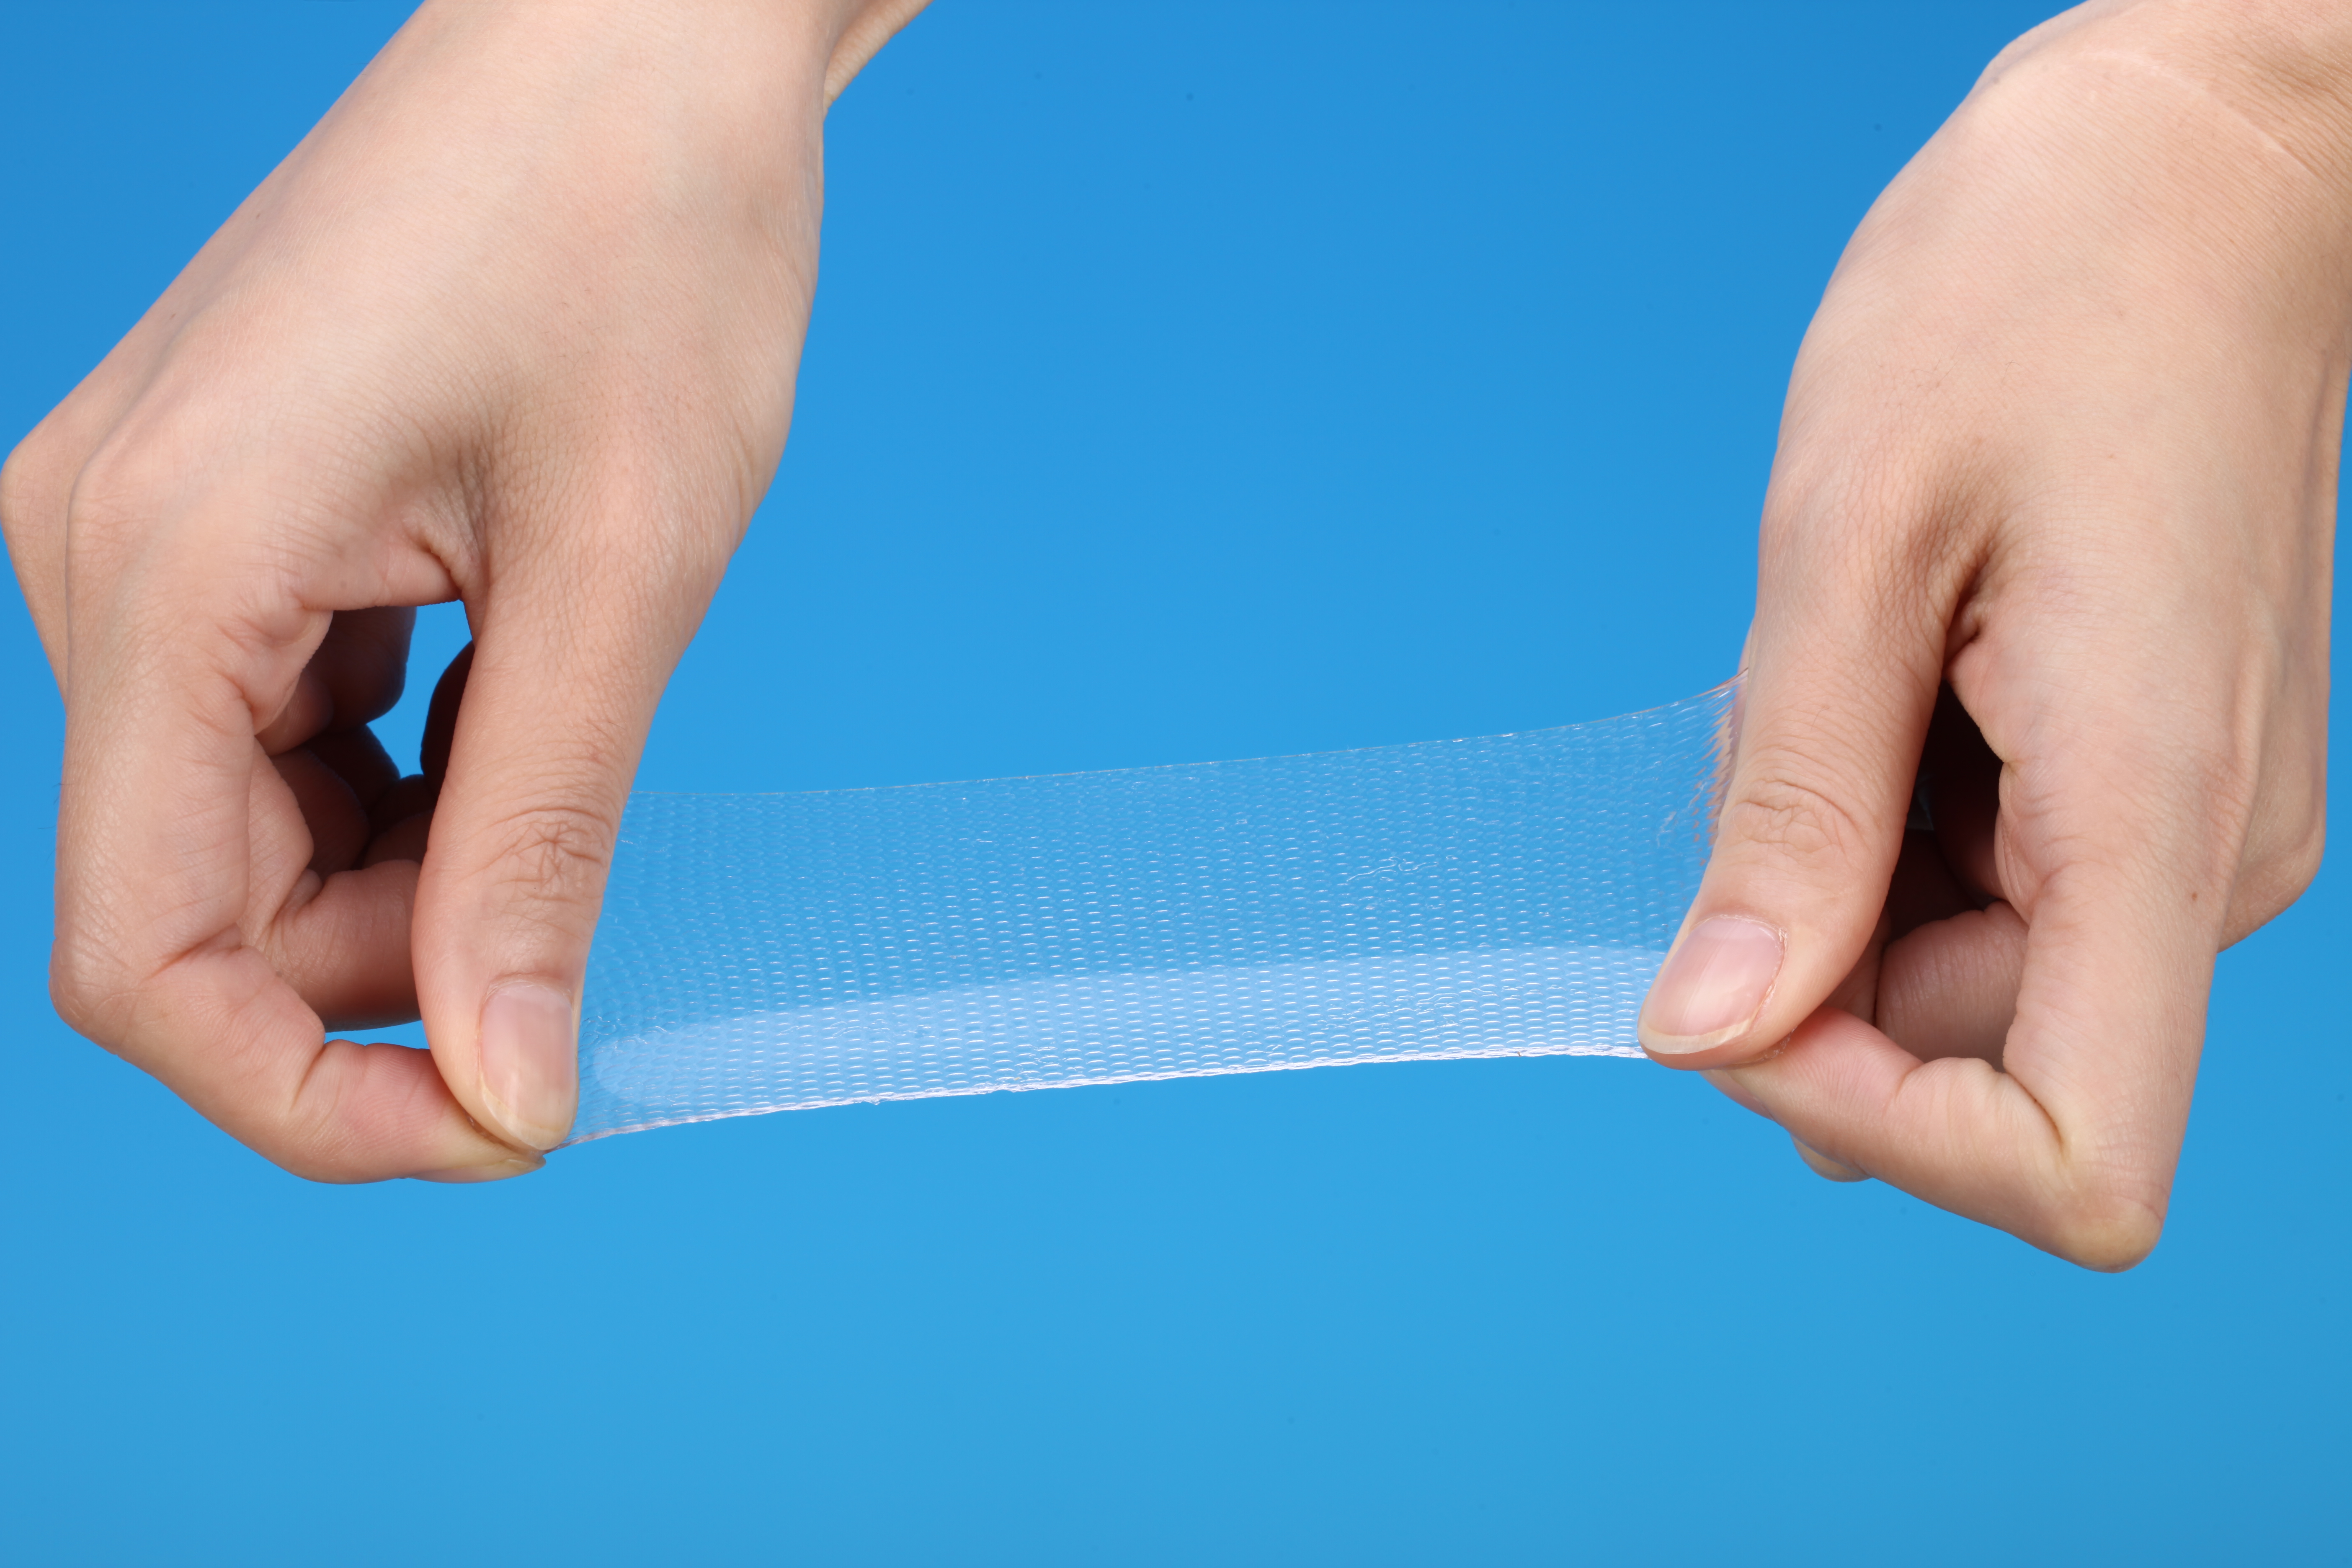 Camada de contato de silicone transparente aprovada pela FDA para incisões